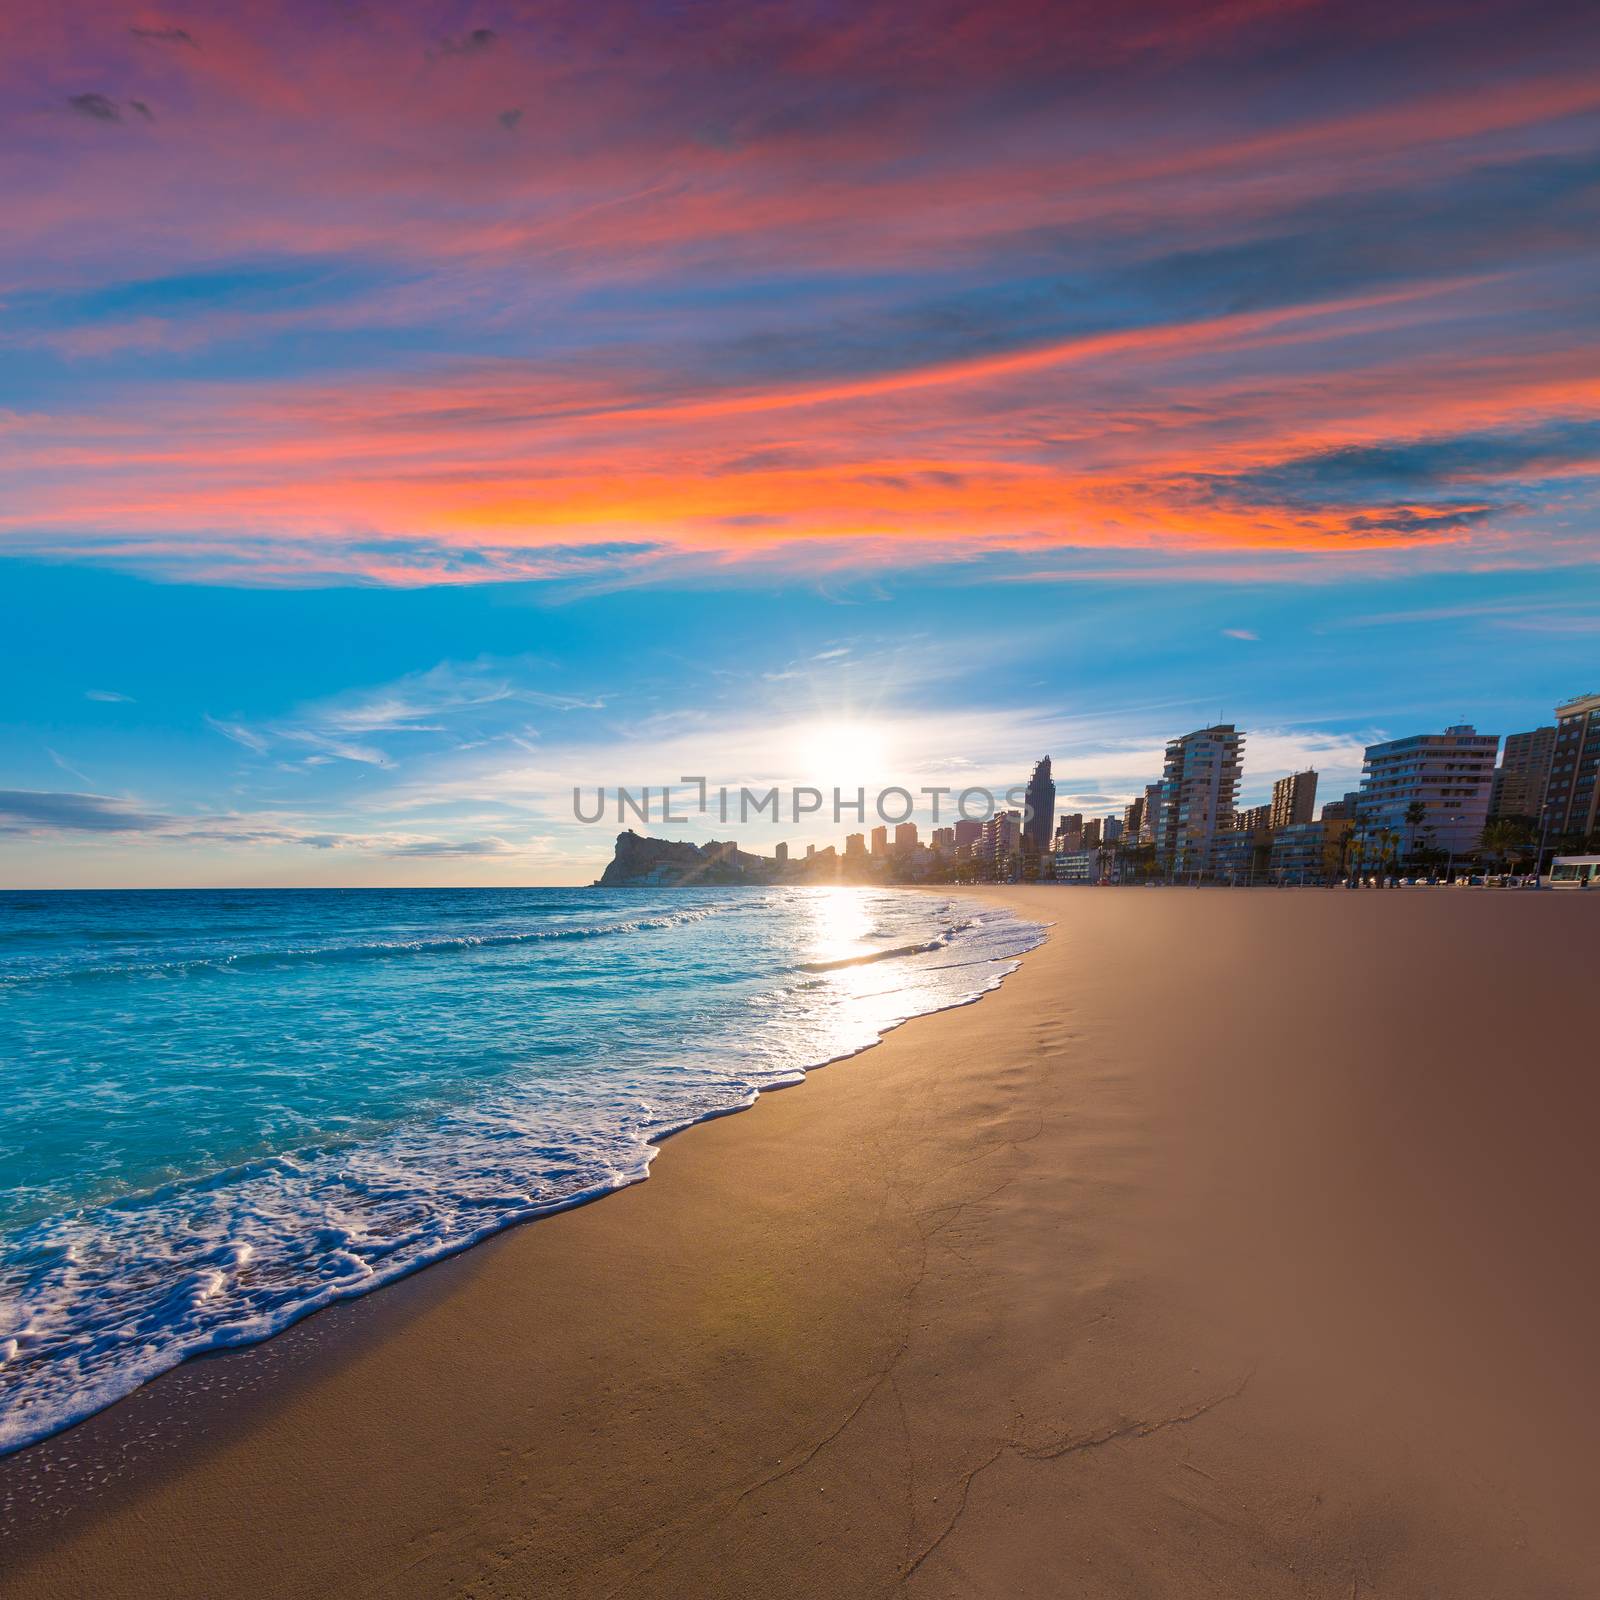 Benidorm Alicante playa de Poniente beach sunset in Spain by lunamarina